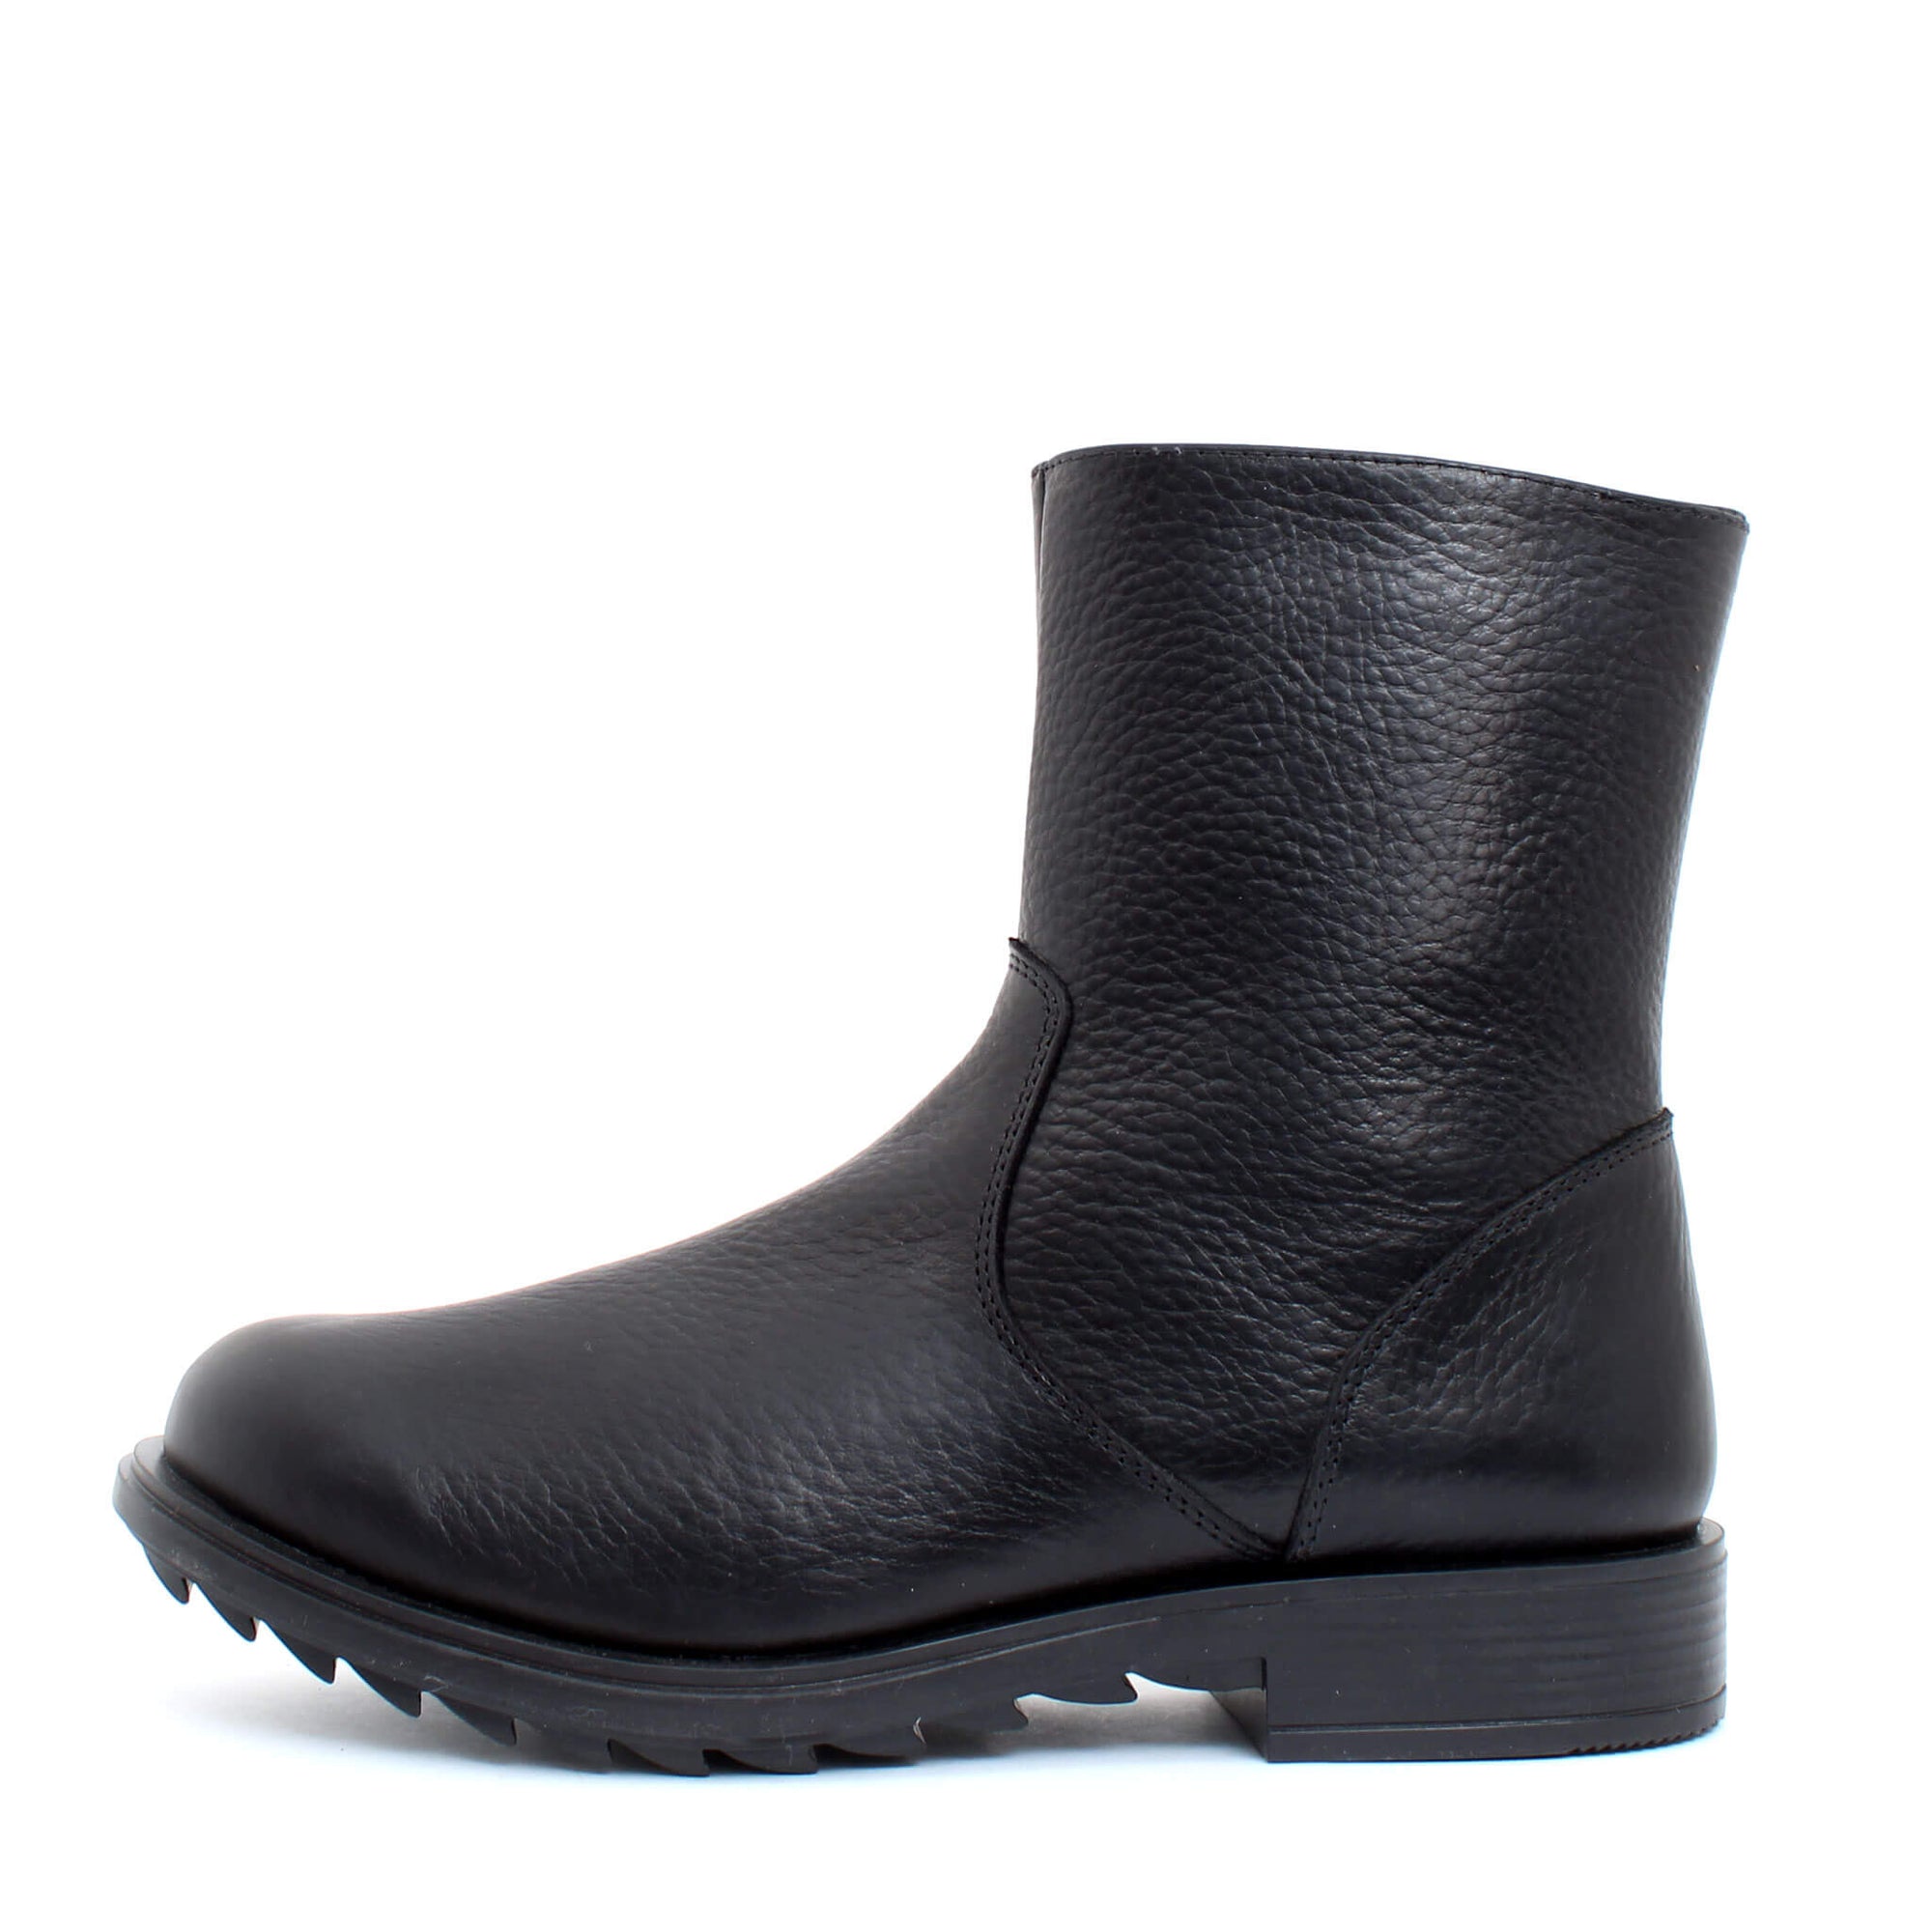 Martin winter boot for men - Black